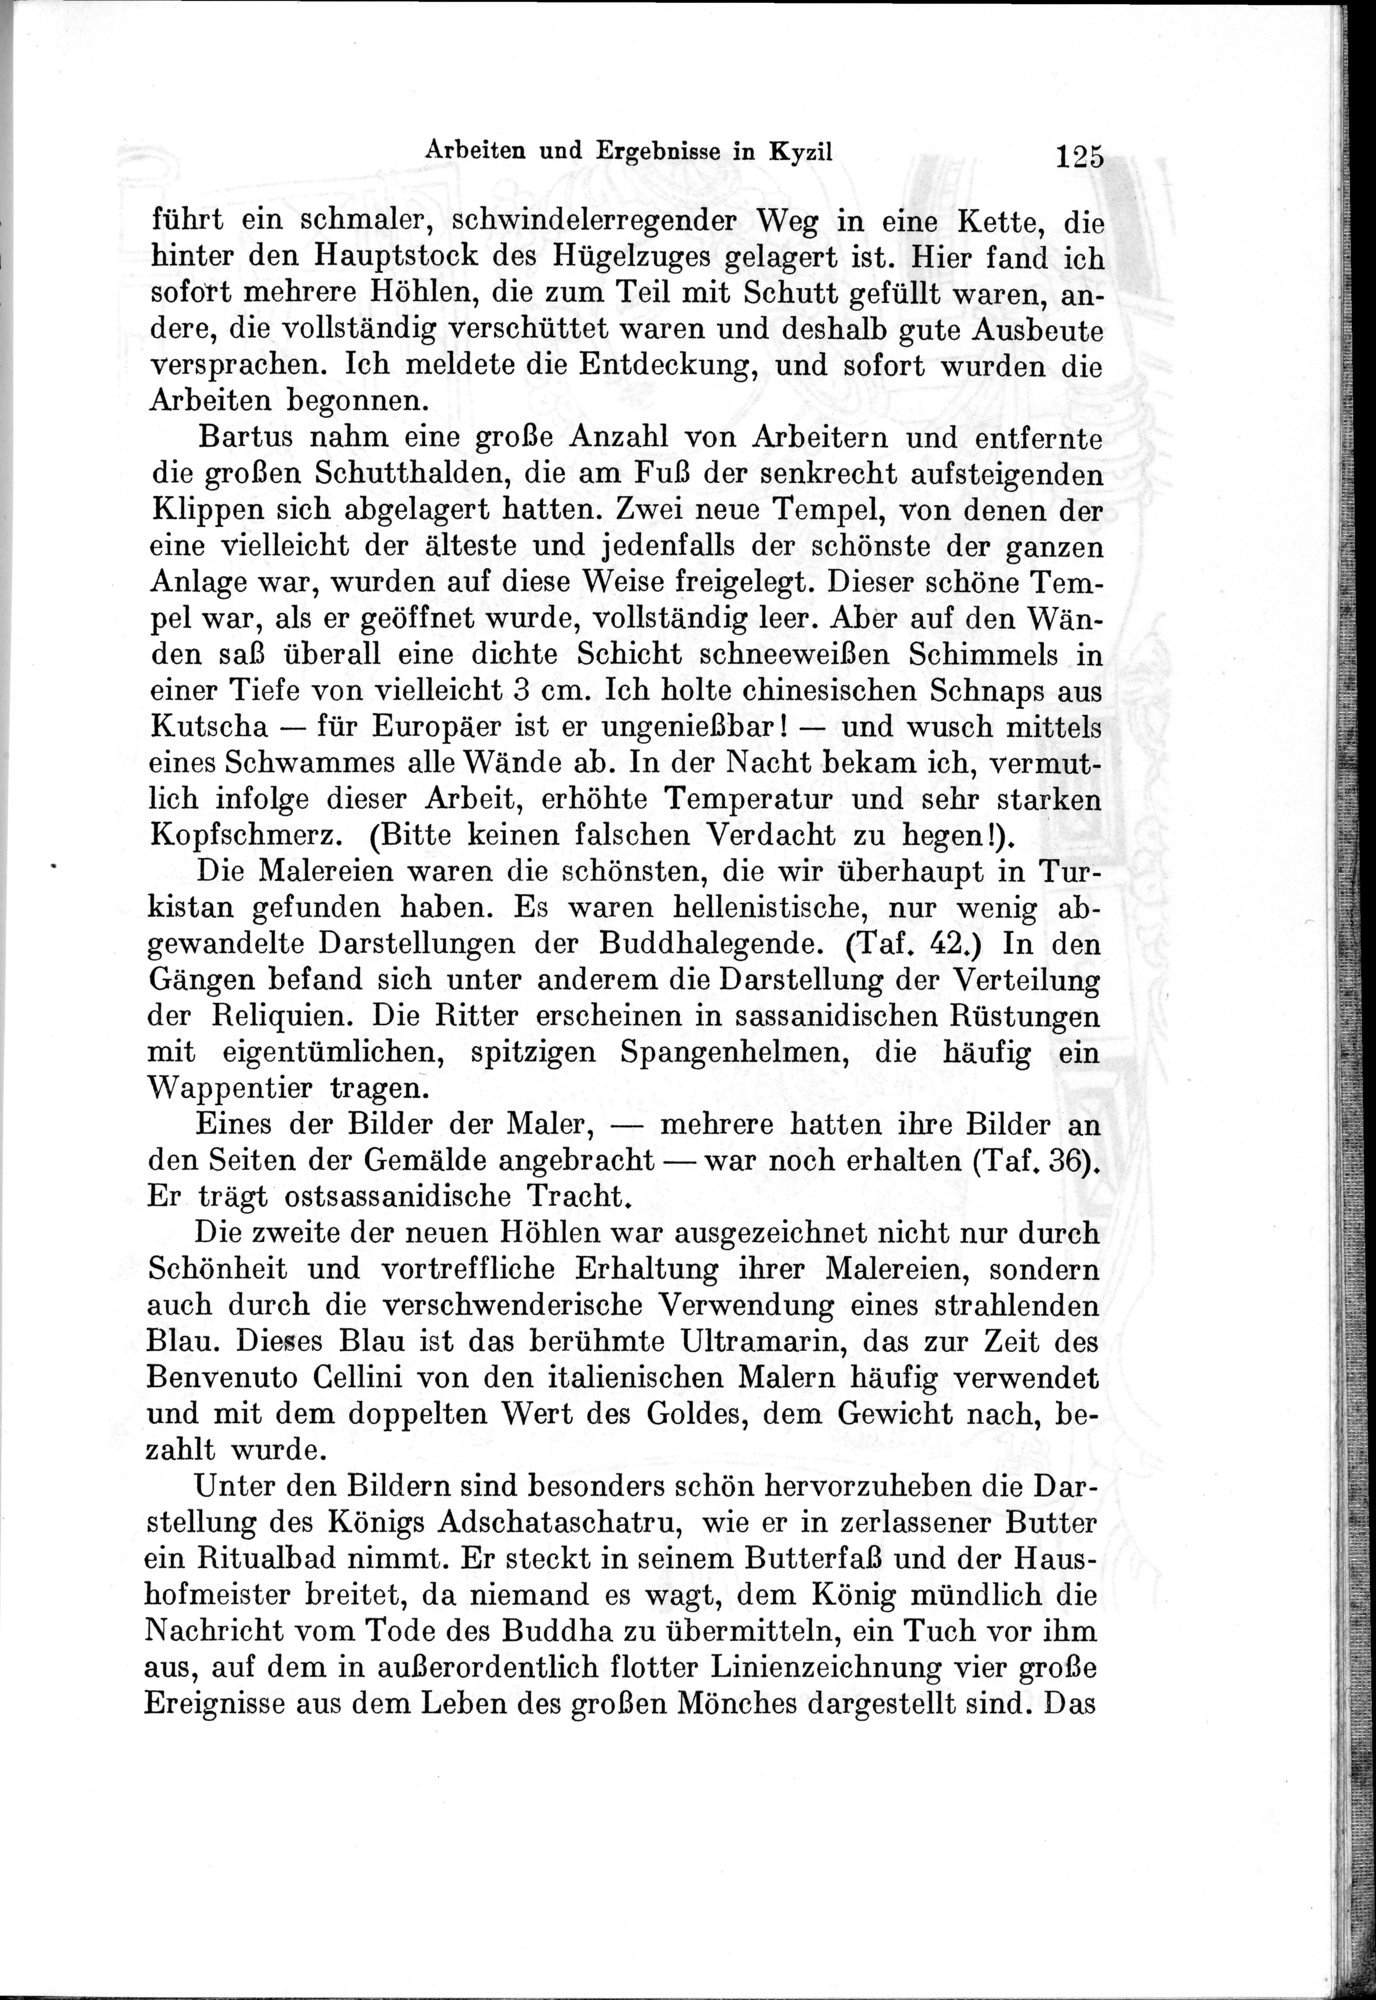 Auf Hellas Spuren in Ostturkistan : vol.1 / Page 181 (Grayscale High Resolution Image)